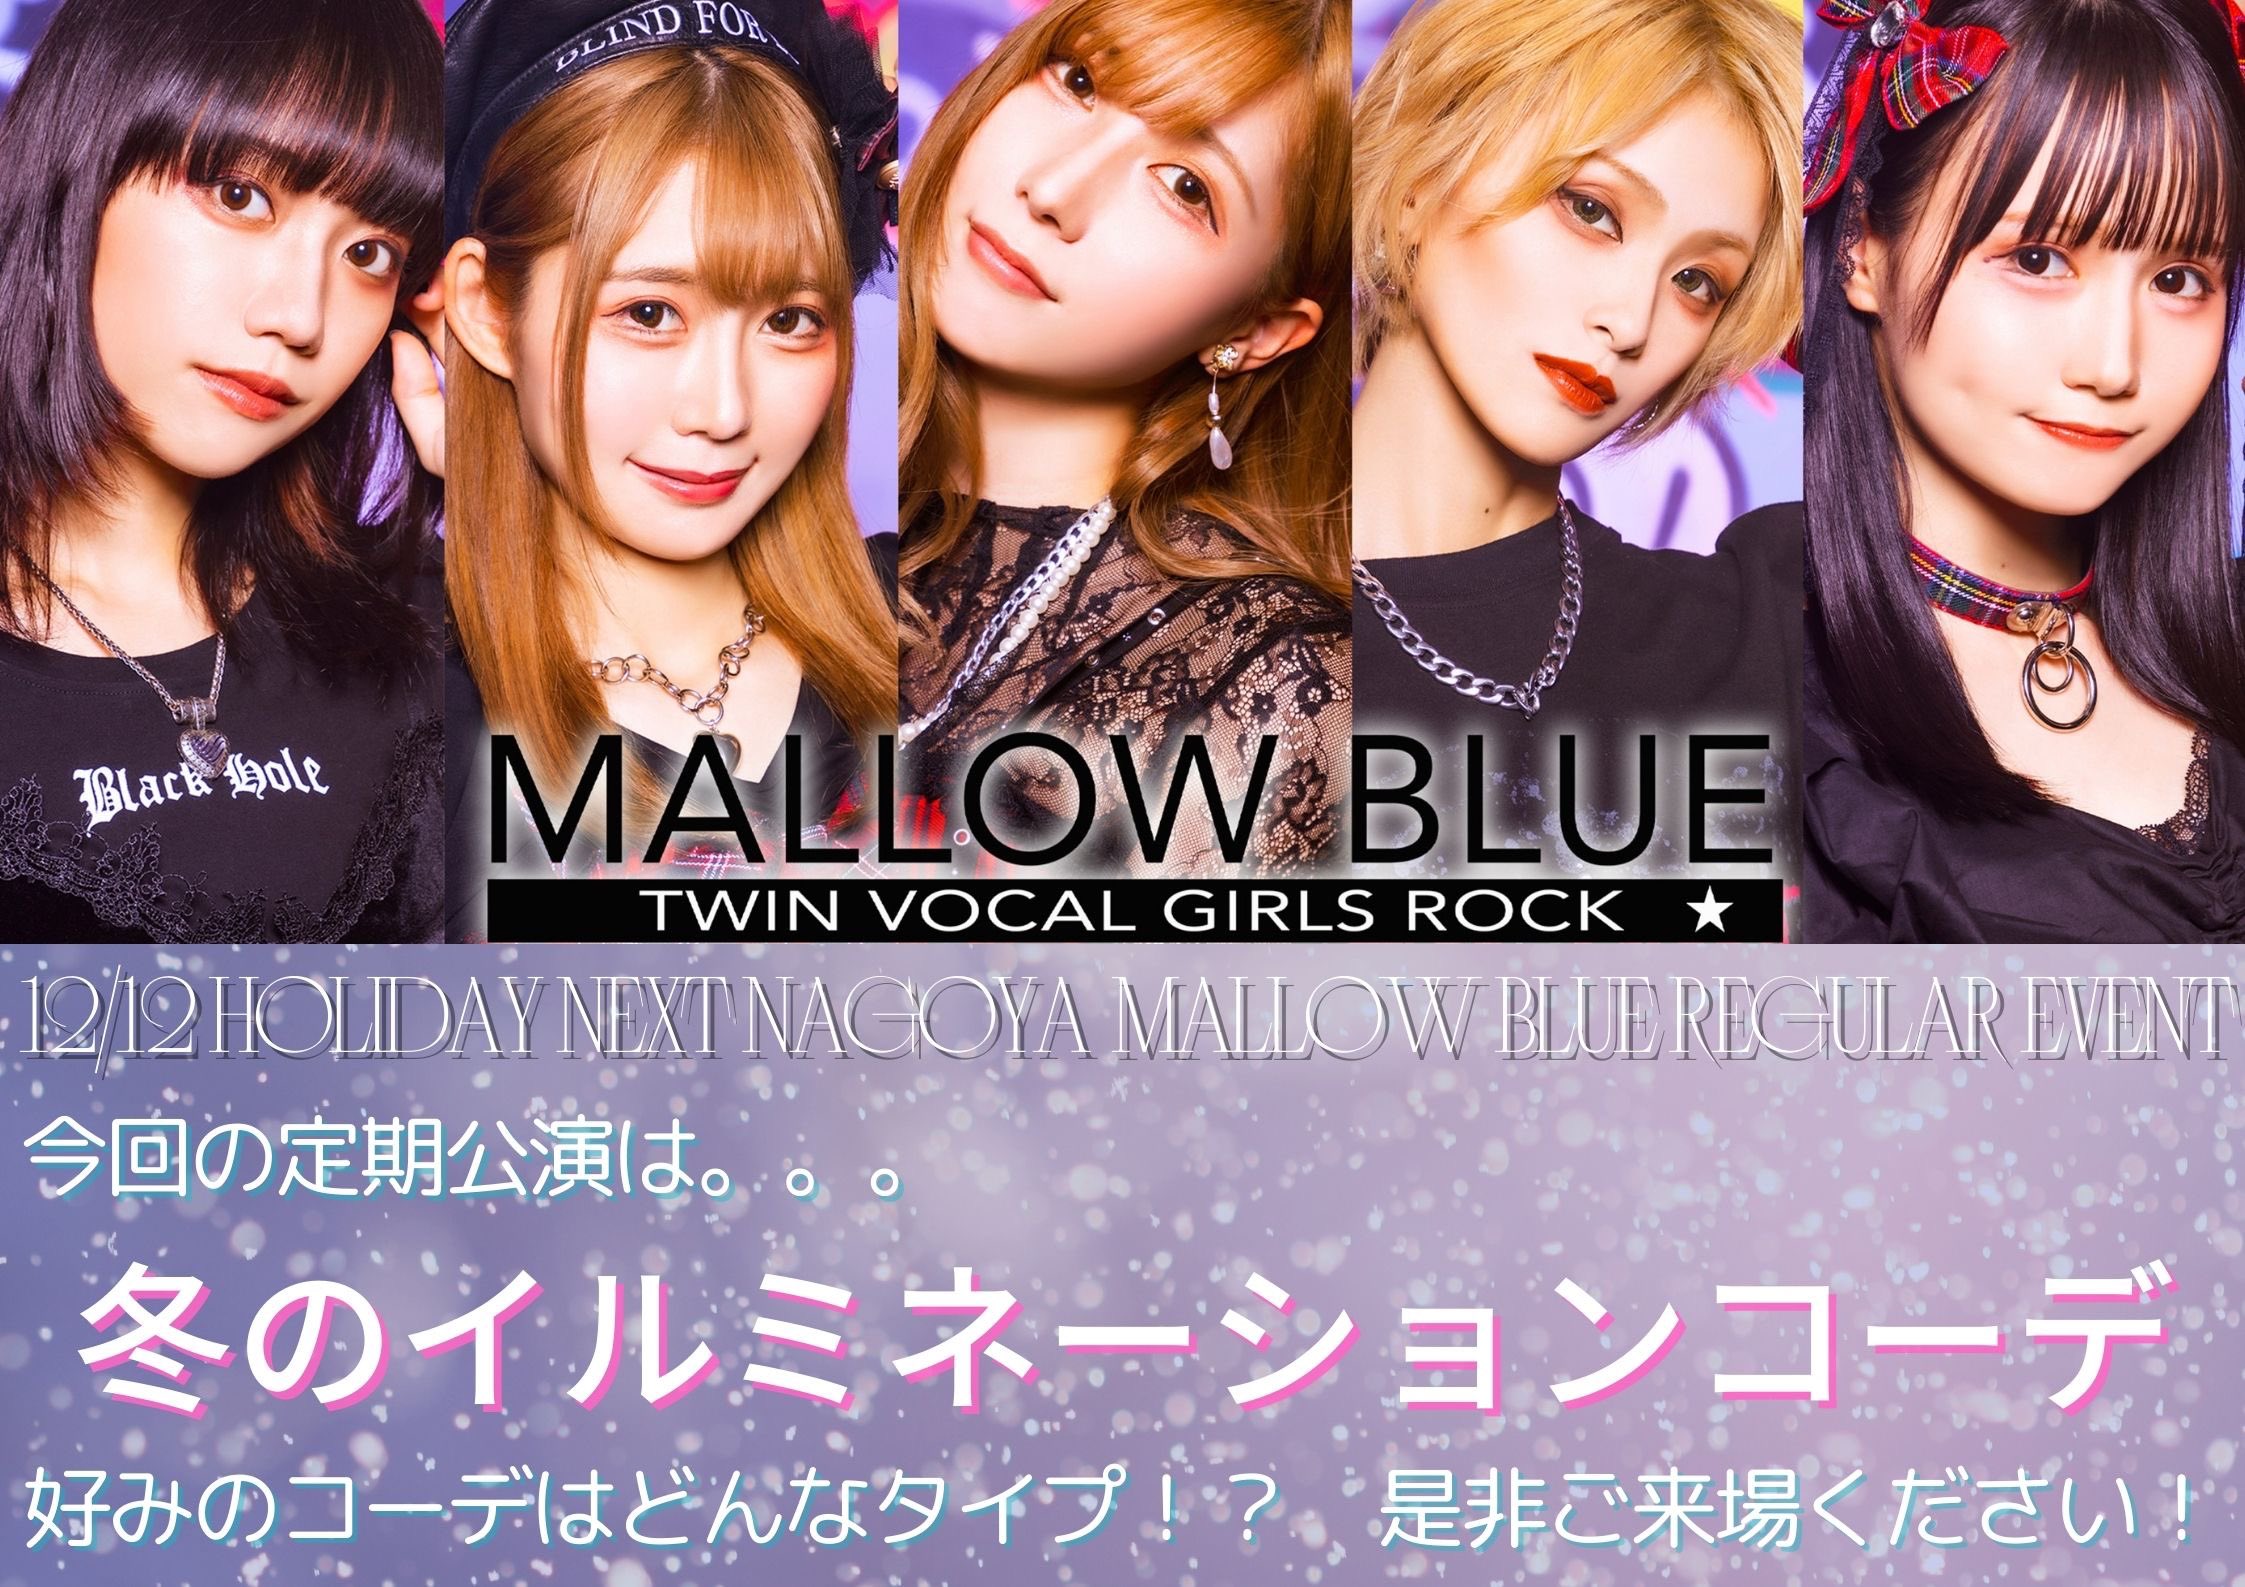 星井あおサポート出演公演(MALLOW BLUE)『MALLOW BLUE 名古屋定期公演』